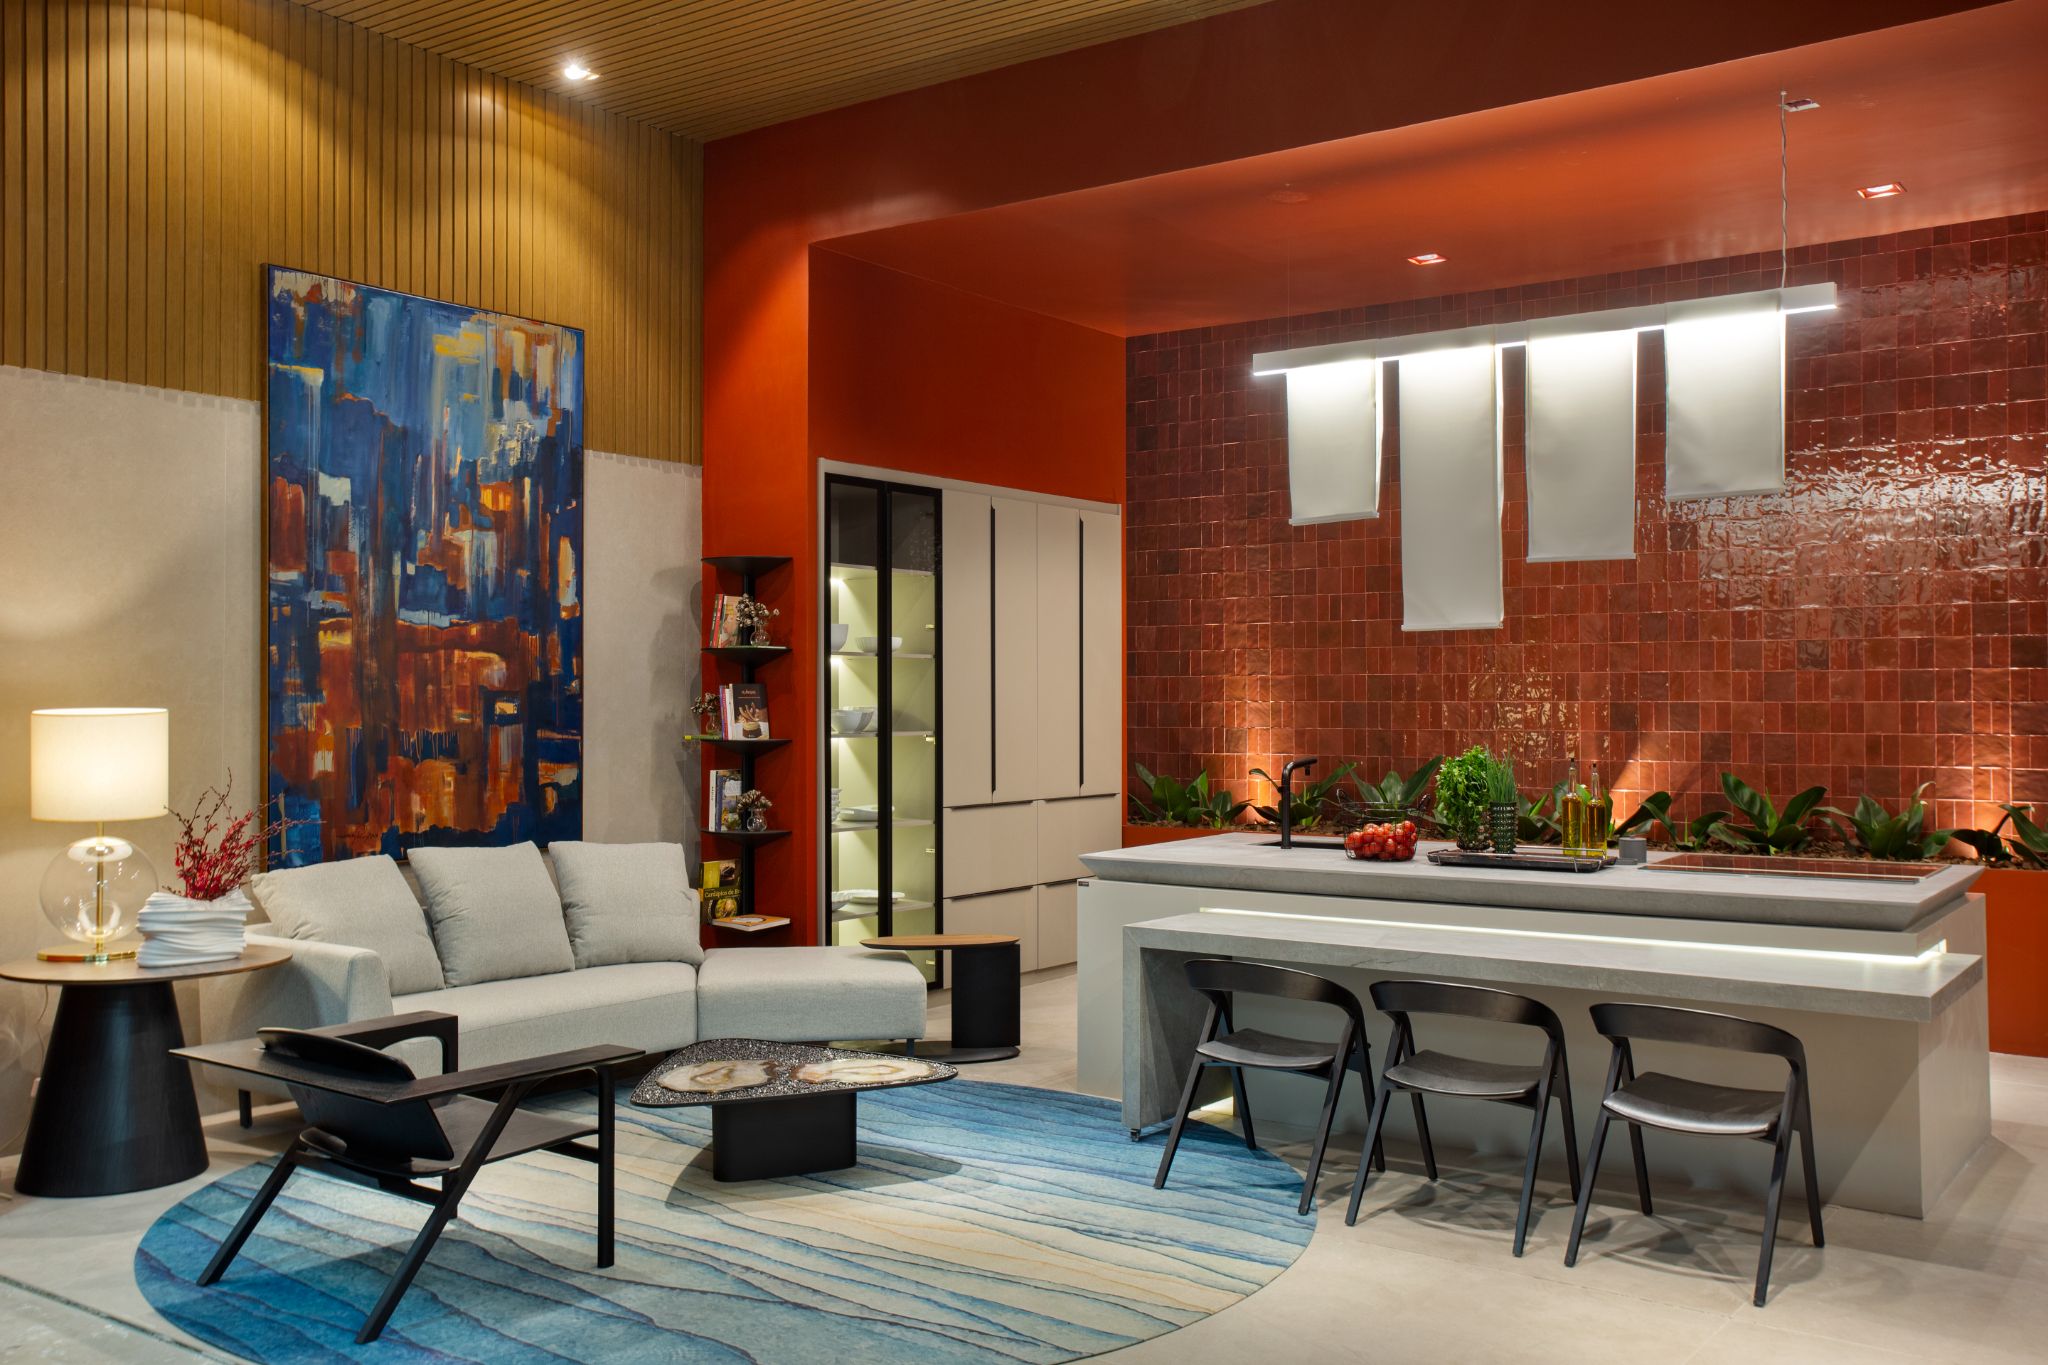 Sala de estar integrada a cozinha com parede revestida de cerâmica vermelha, bancada cinza, sofá cinza, cadeiras pretas e tapete redondo azul.